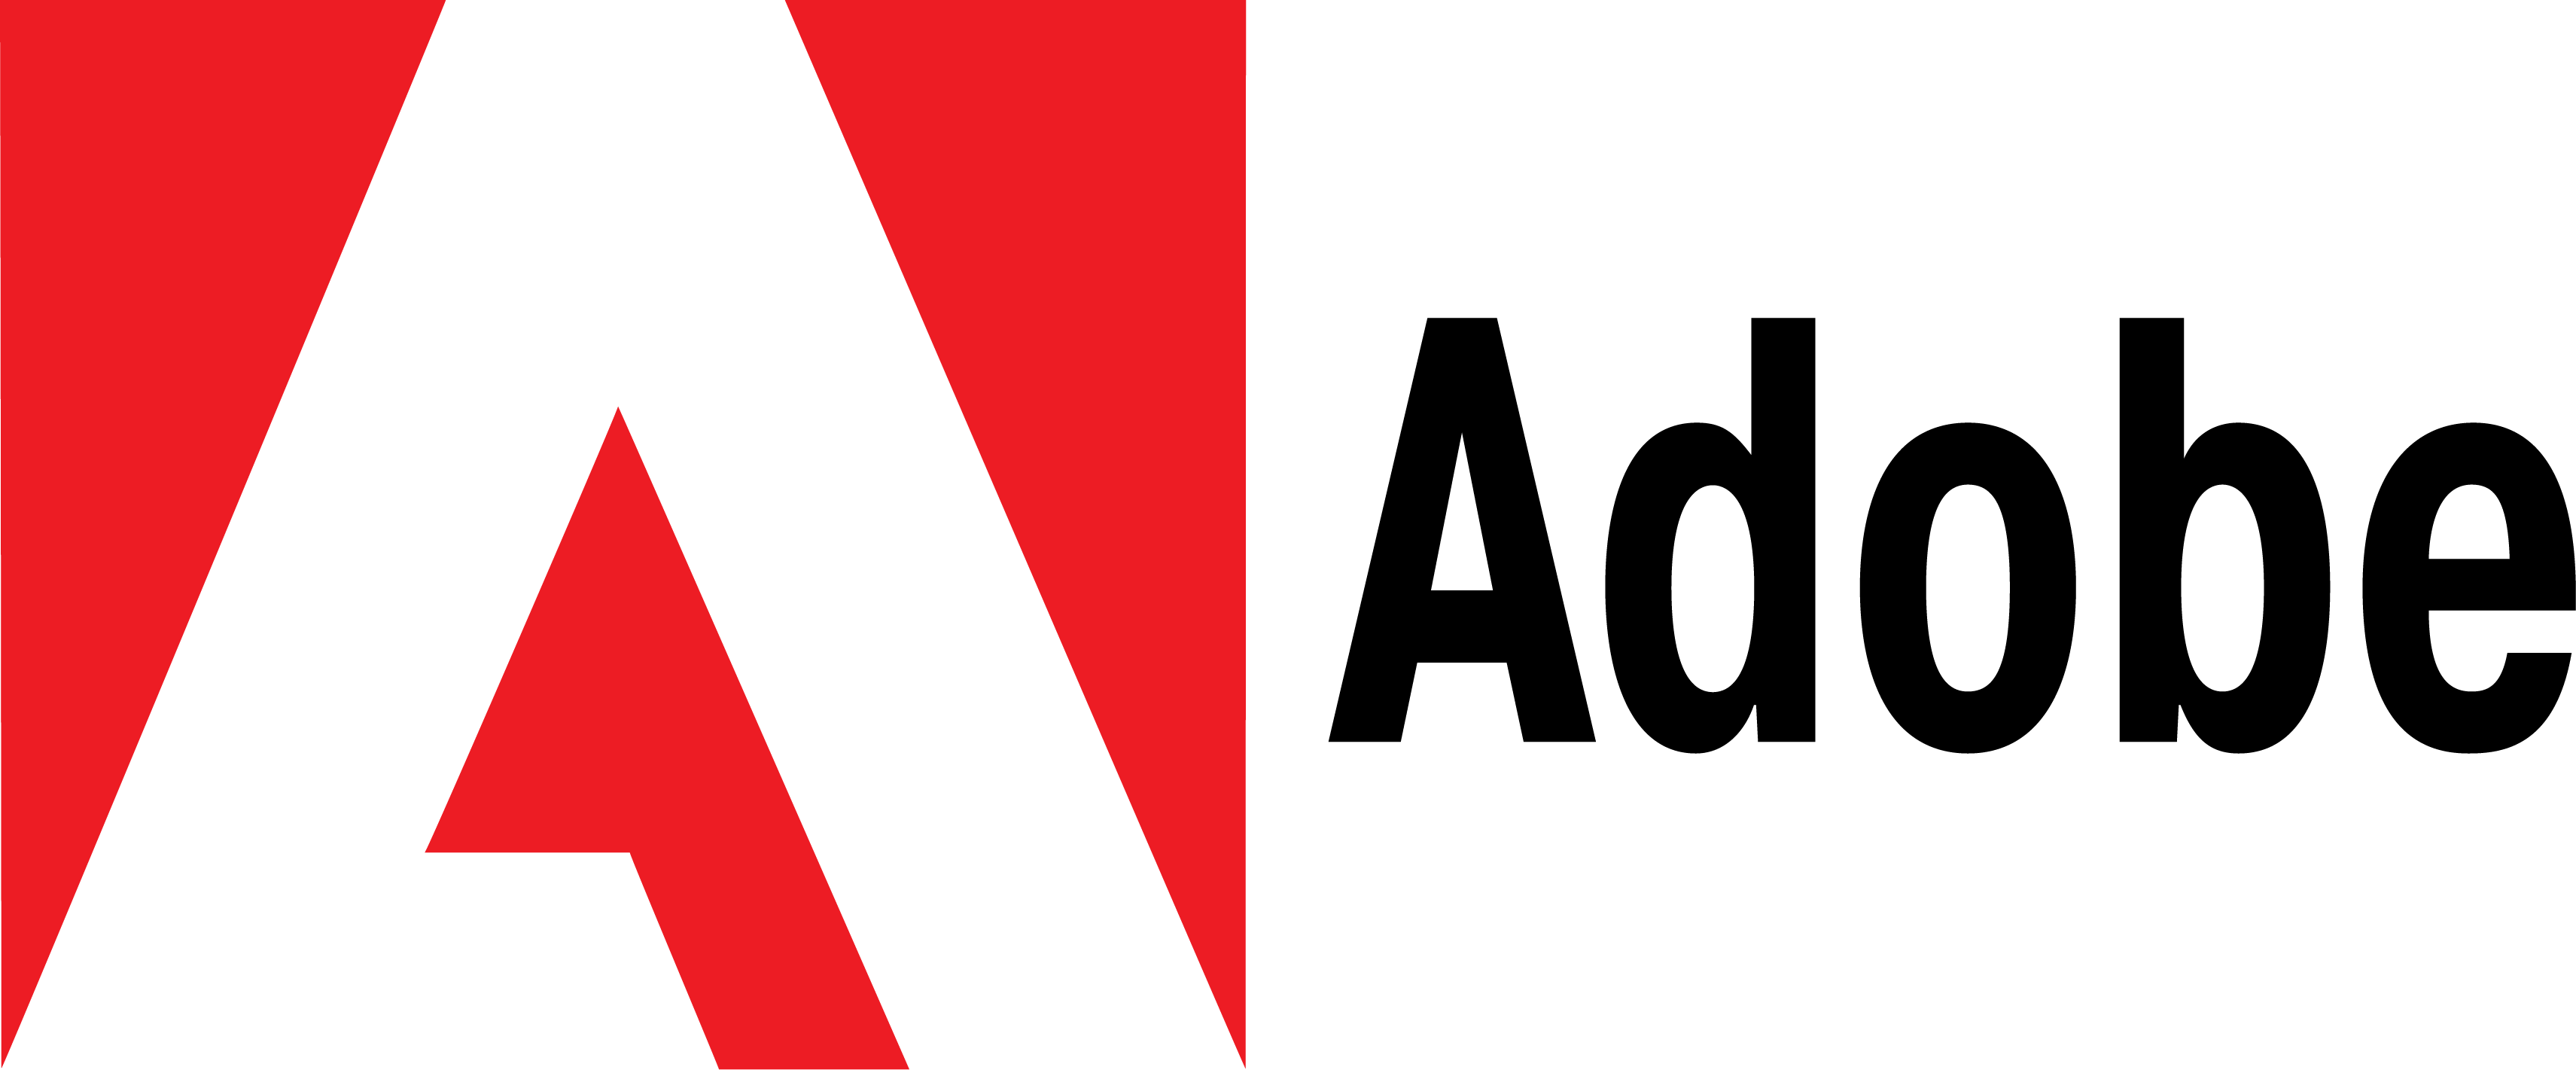 Logo for Adobe